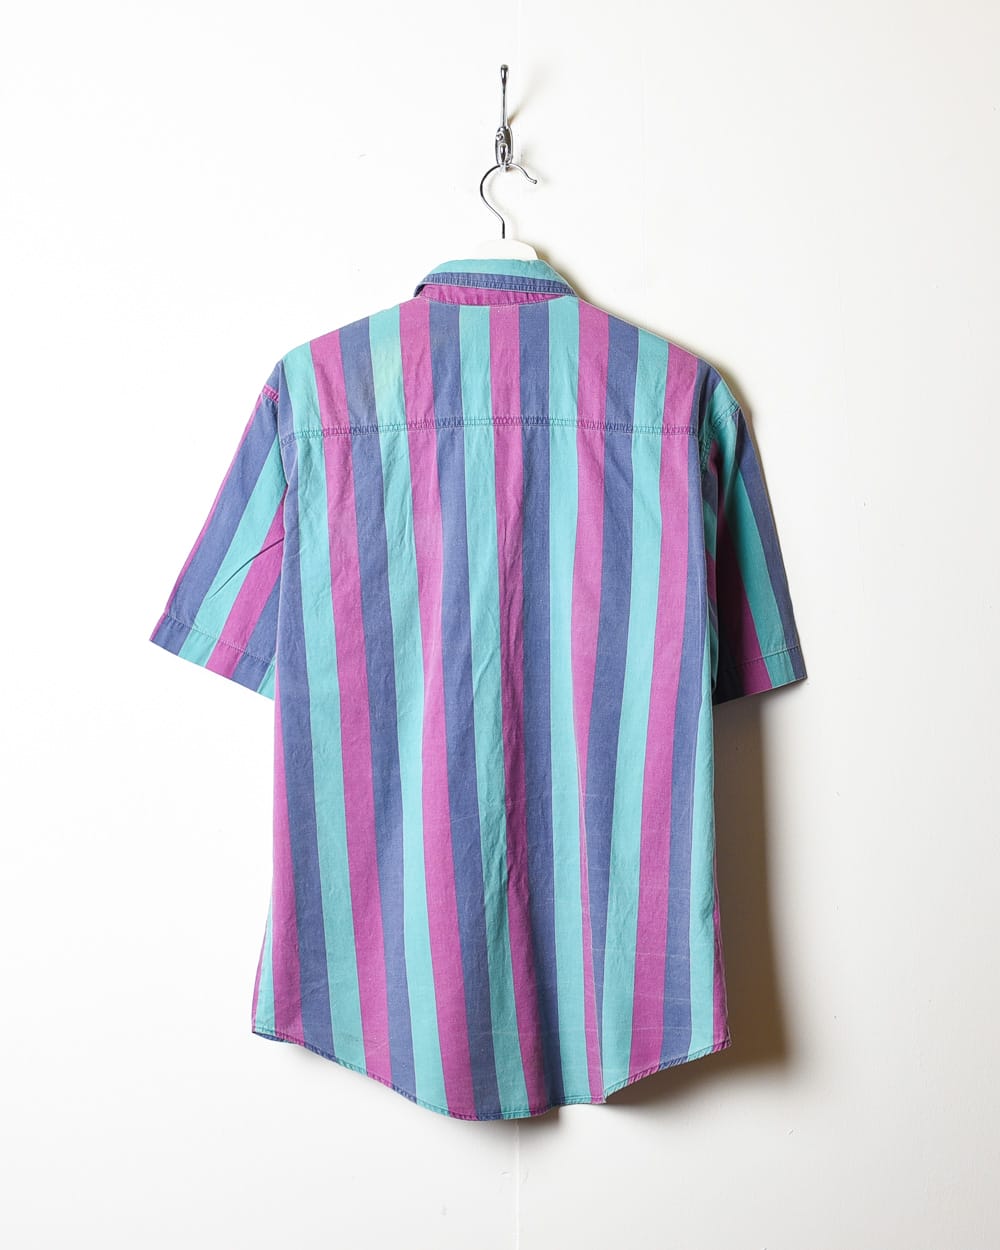 Multicolour Striped Short Sleeved Shirt - Medium